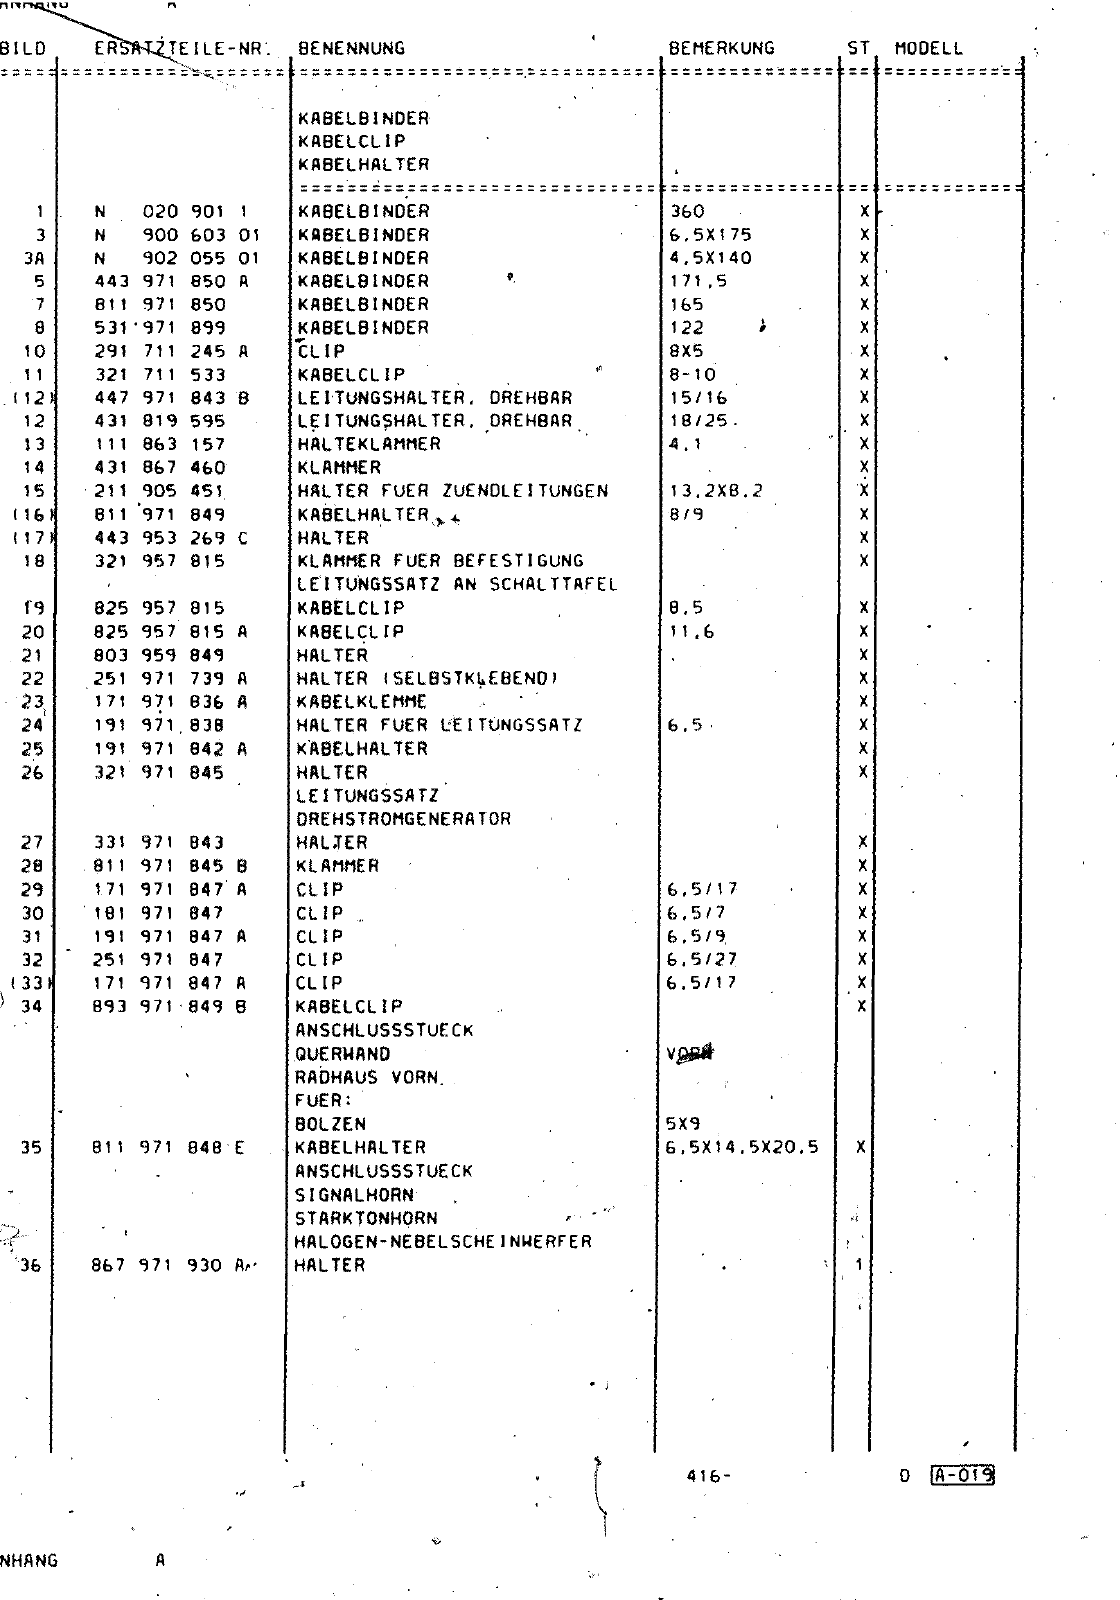 Vorschau Passat Mod 87-88 Seite 1066